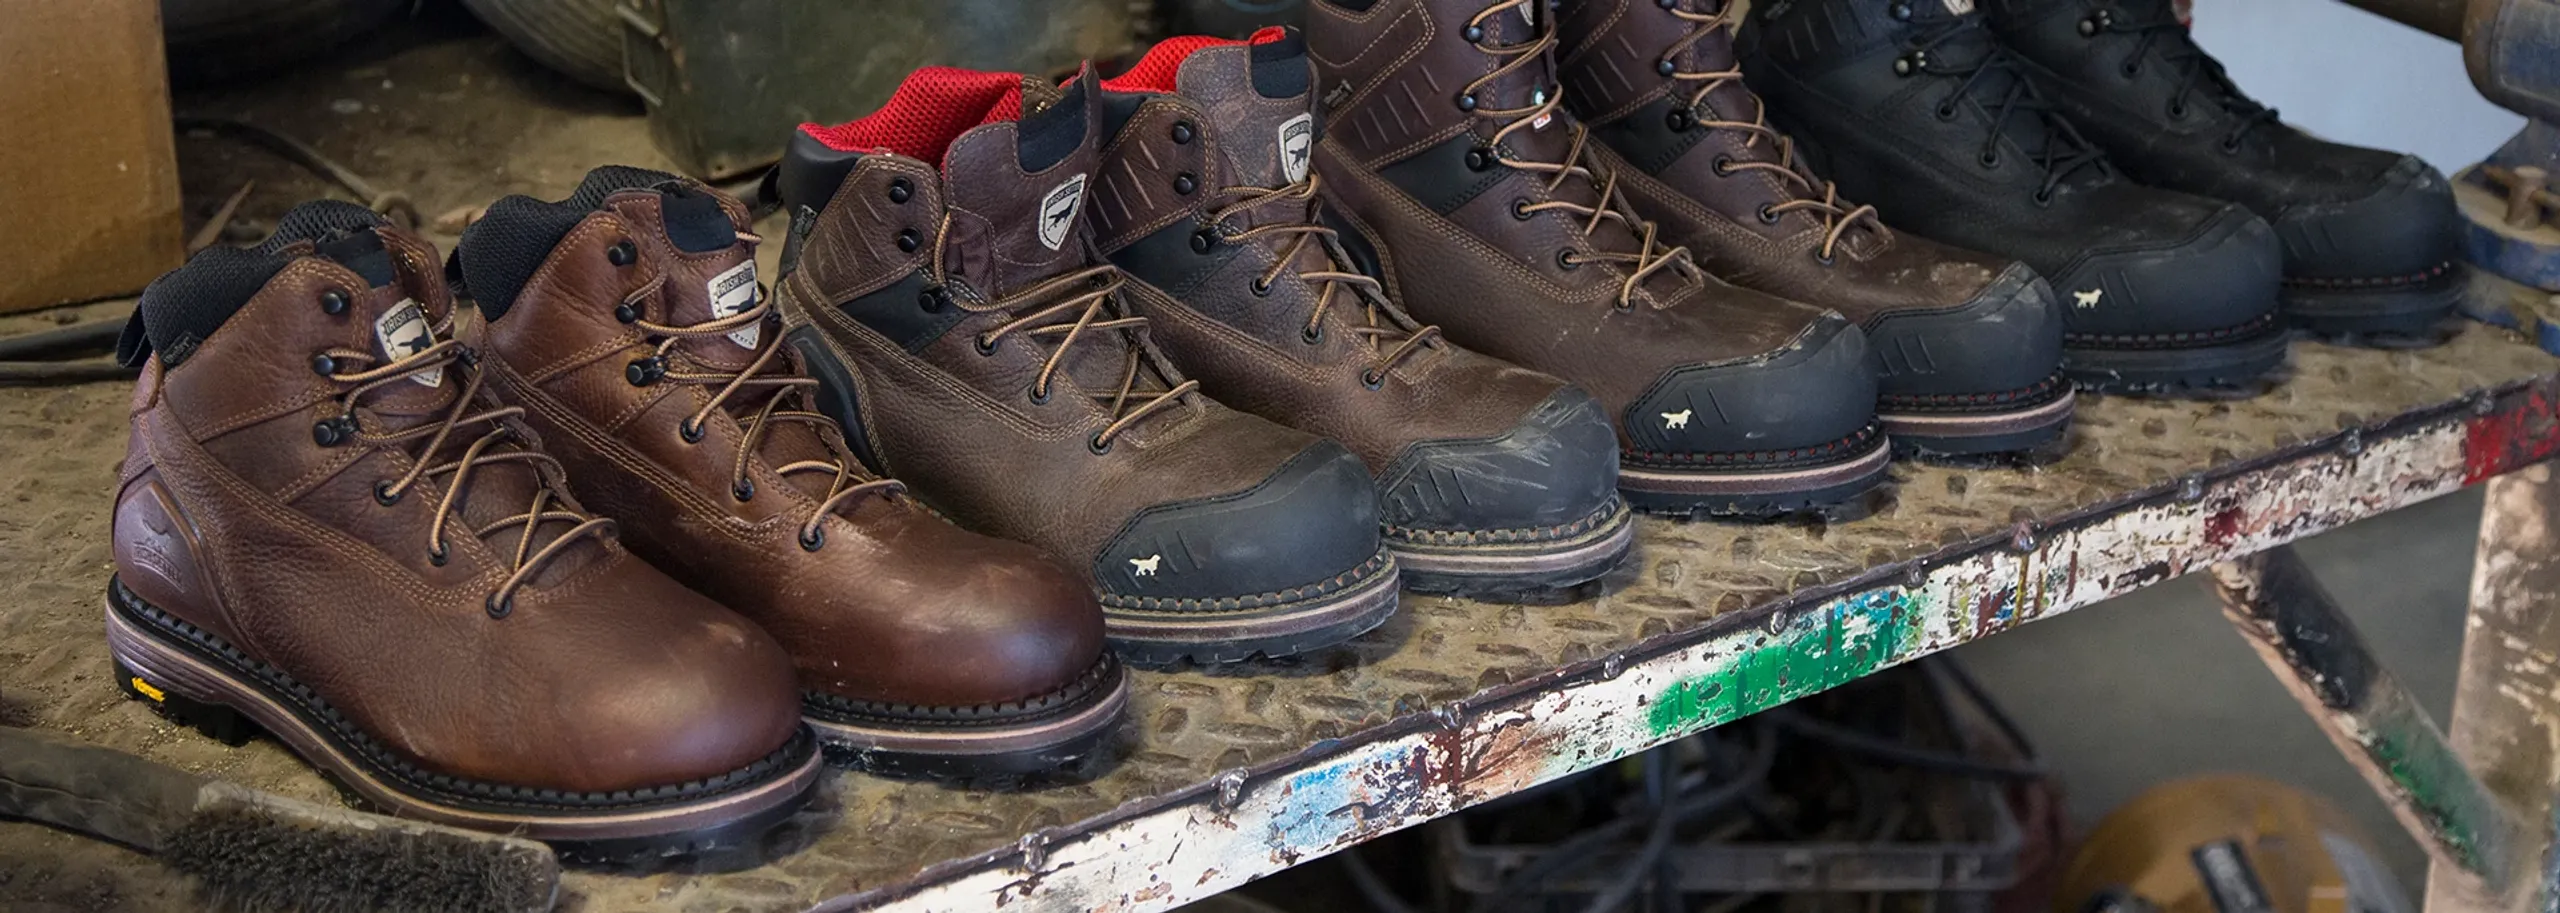 Irish Setter Edgerton Work Boots